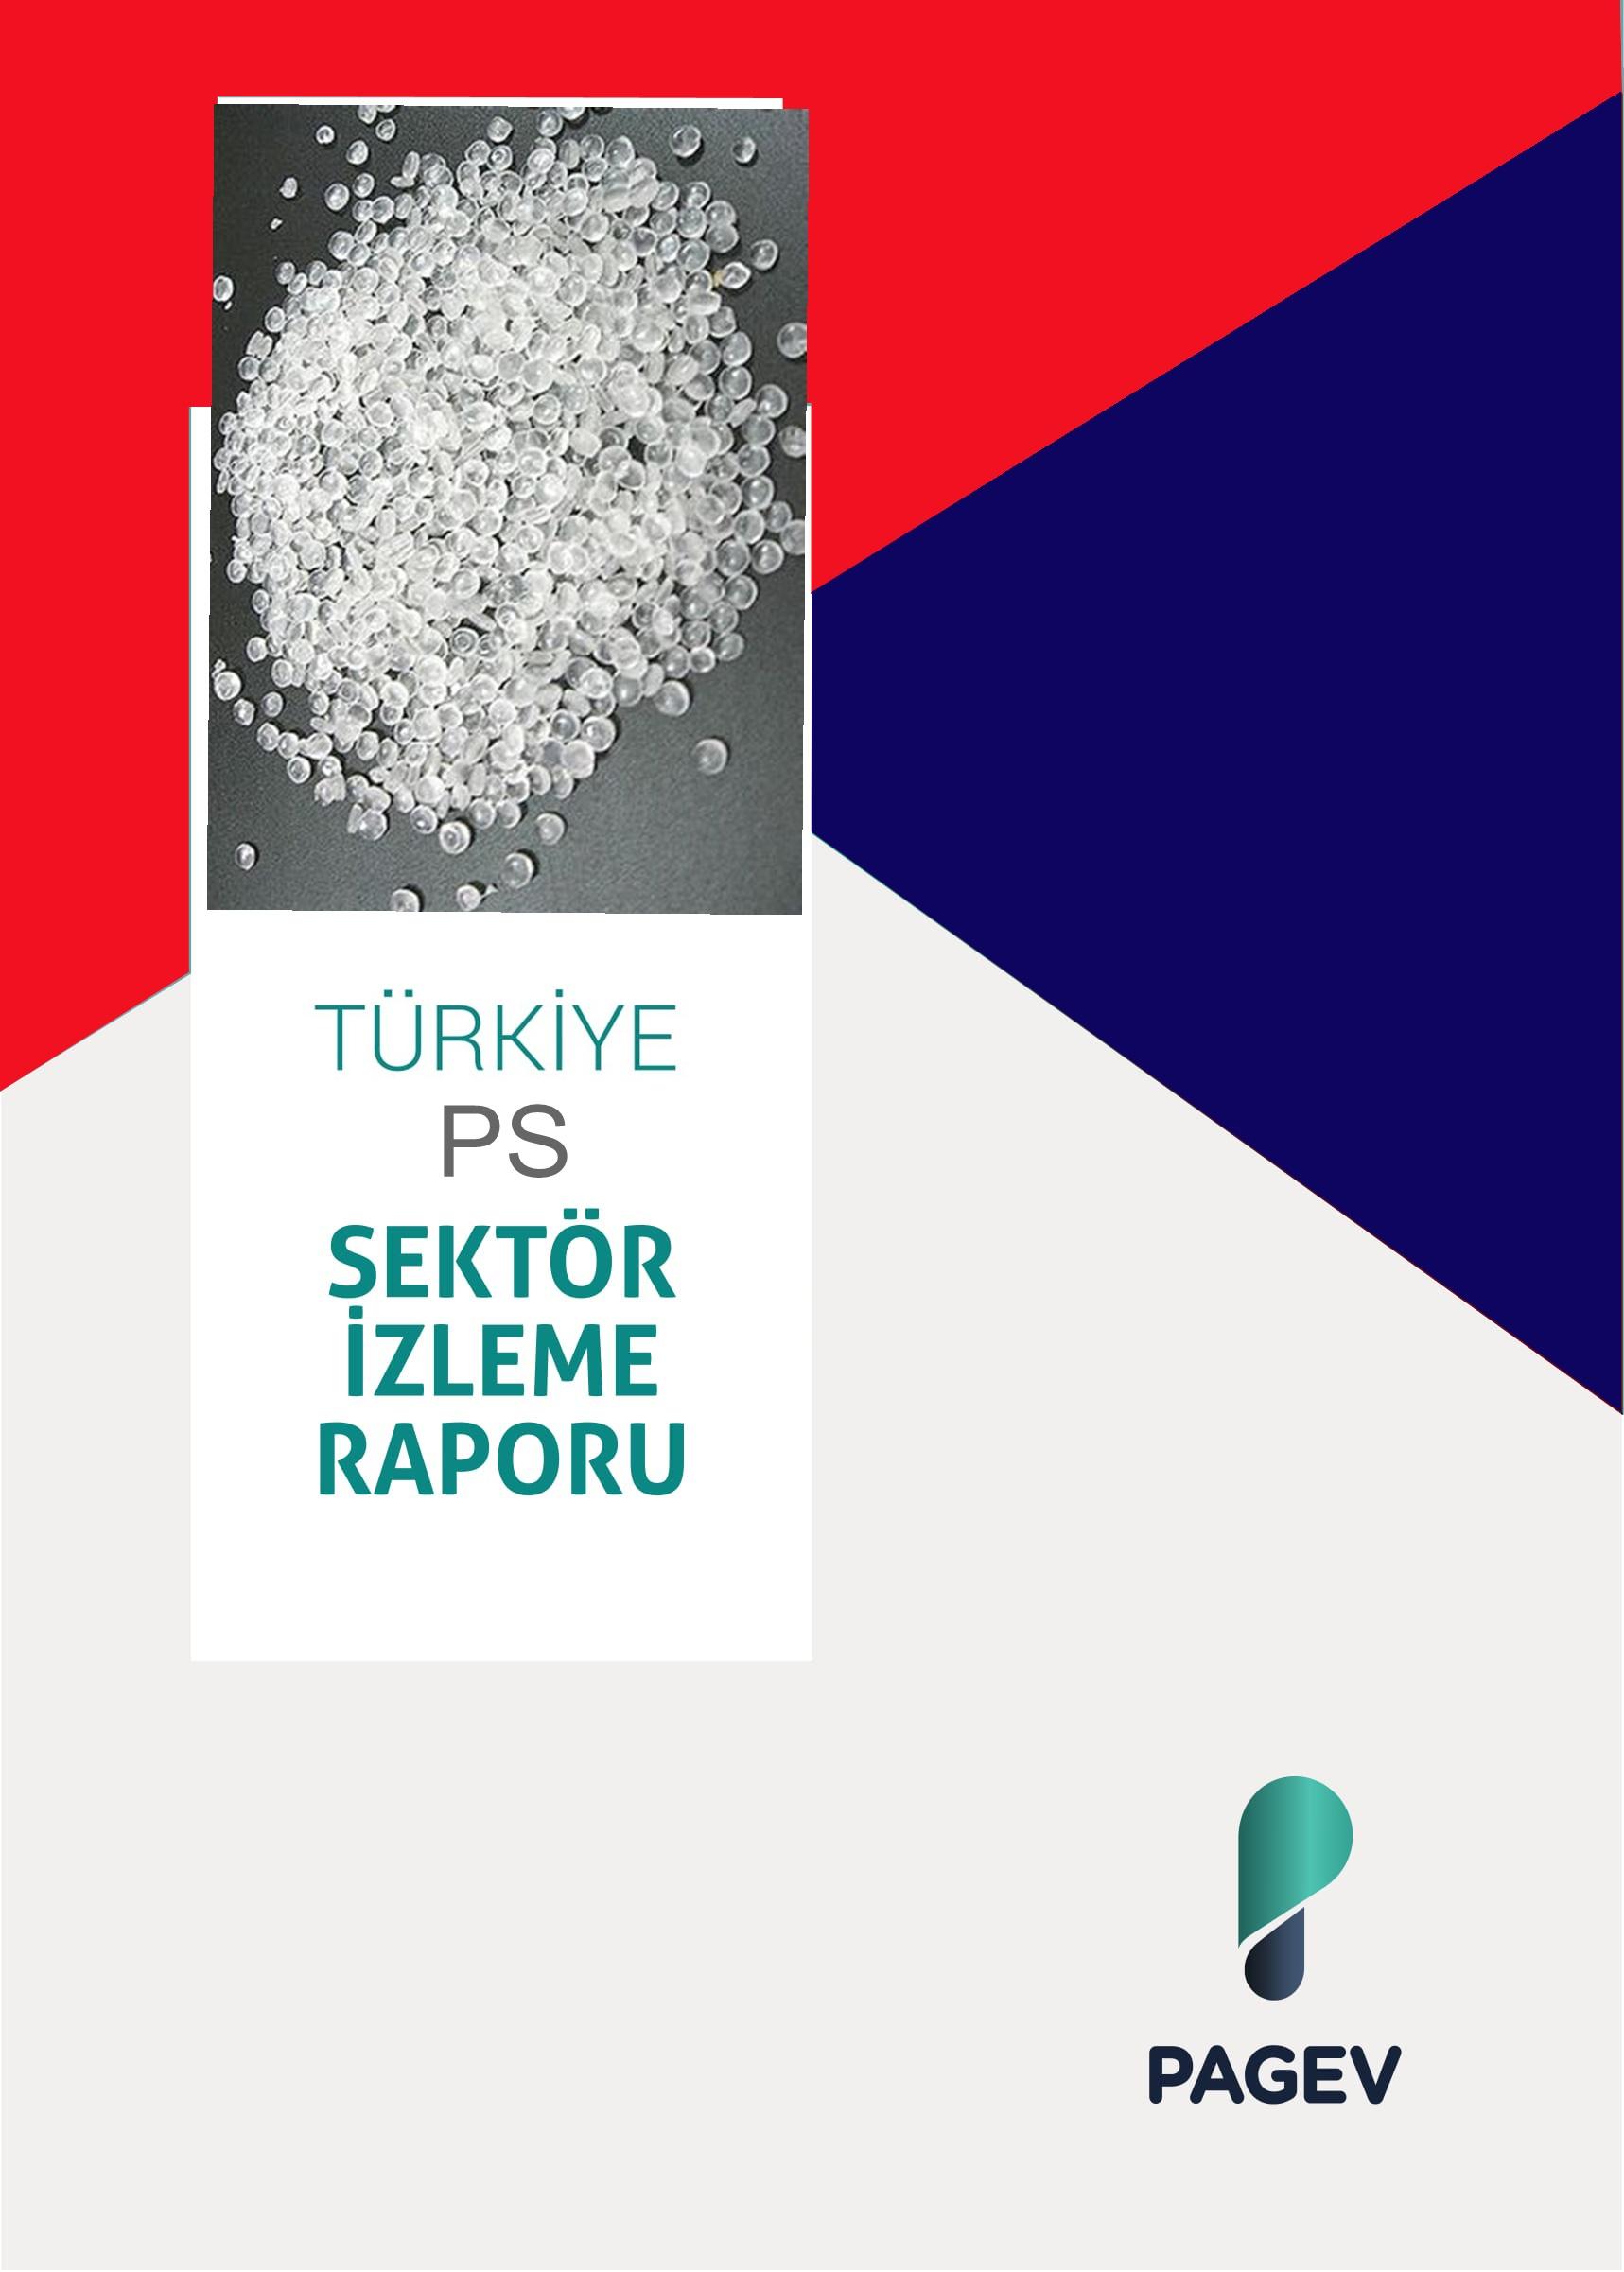 Türkiye Polistiren Sektör İzleme Raporu 2017/9 Aylık (Yıl Sonu Tahminli)